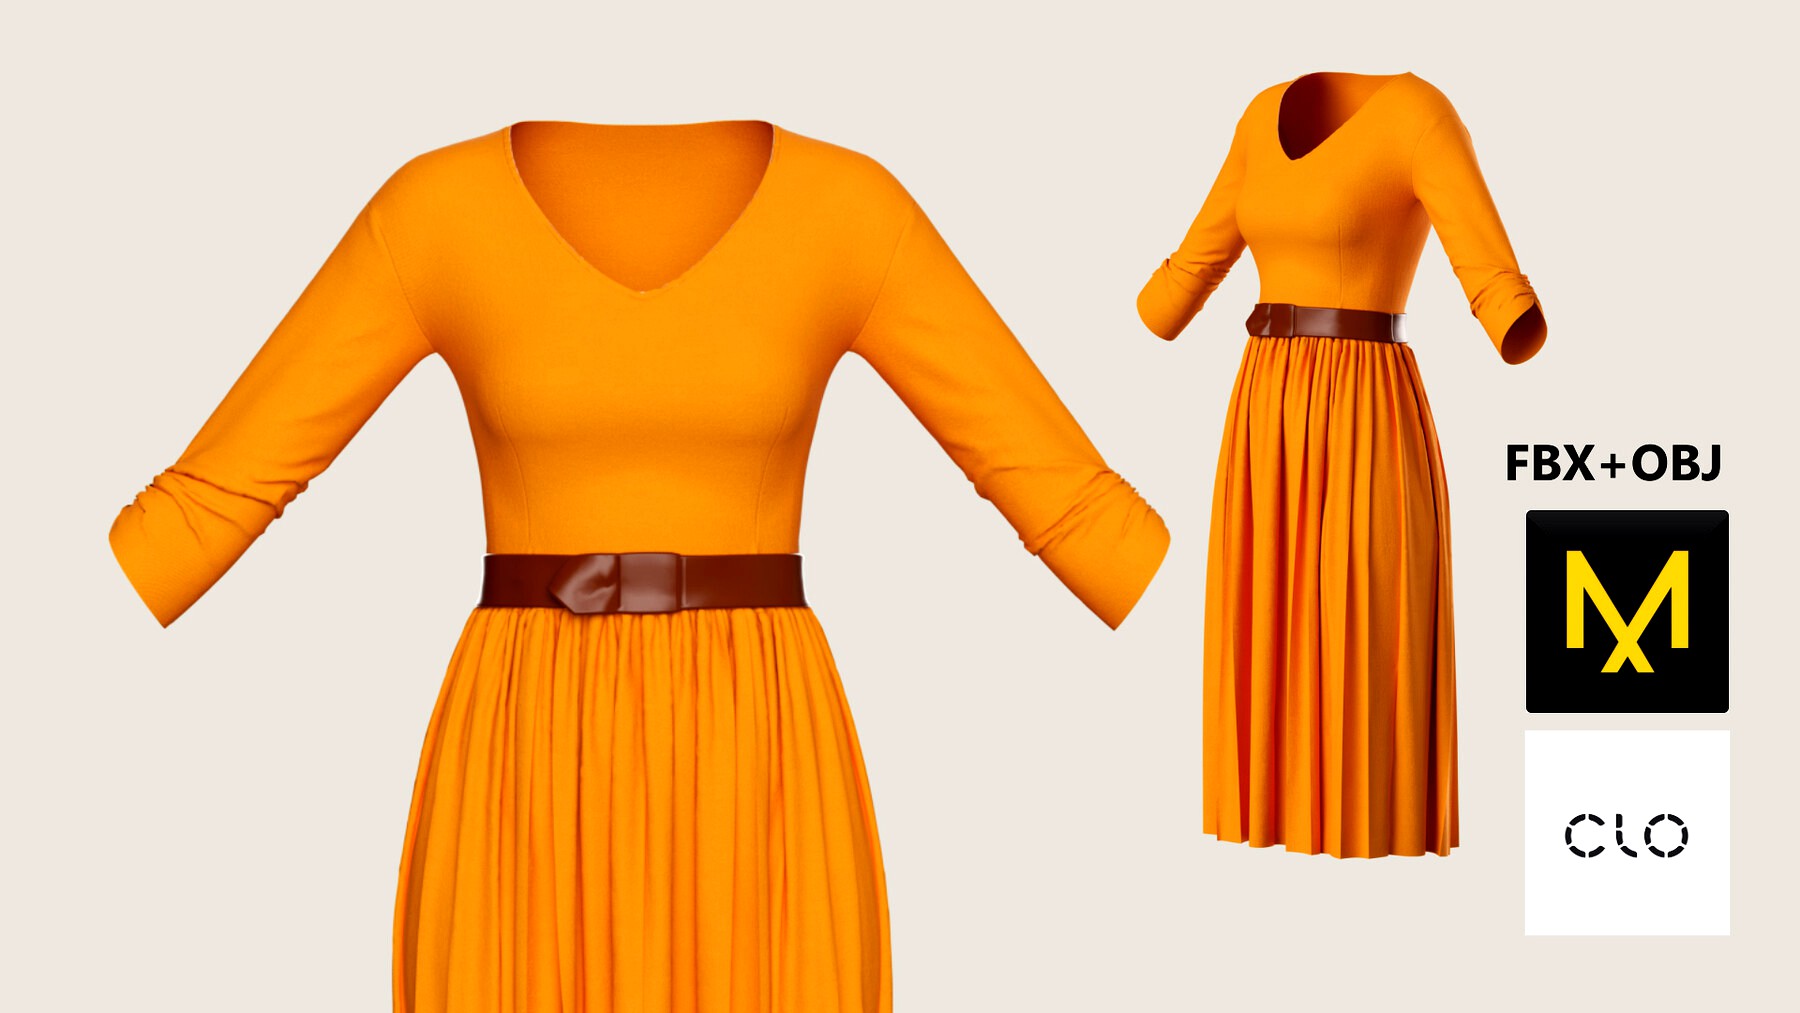 Modern Dress. Marvelous Designer/Clo3d project + OBJ + FBX